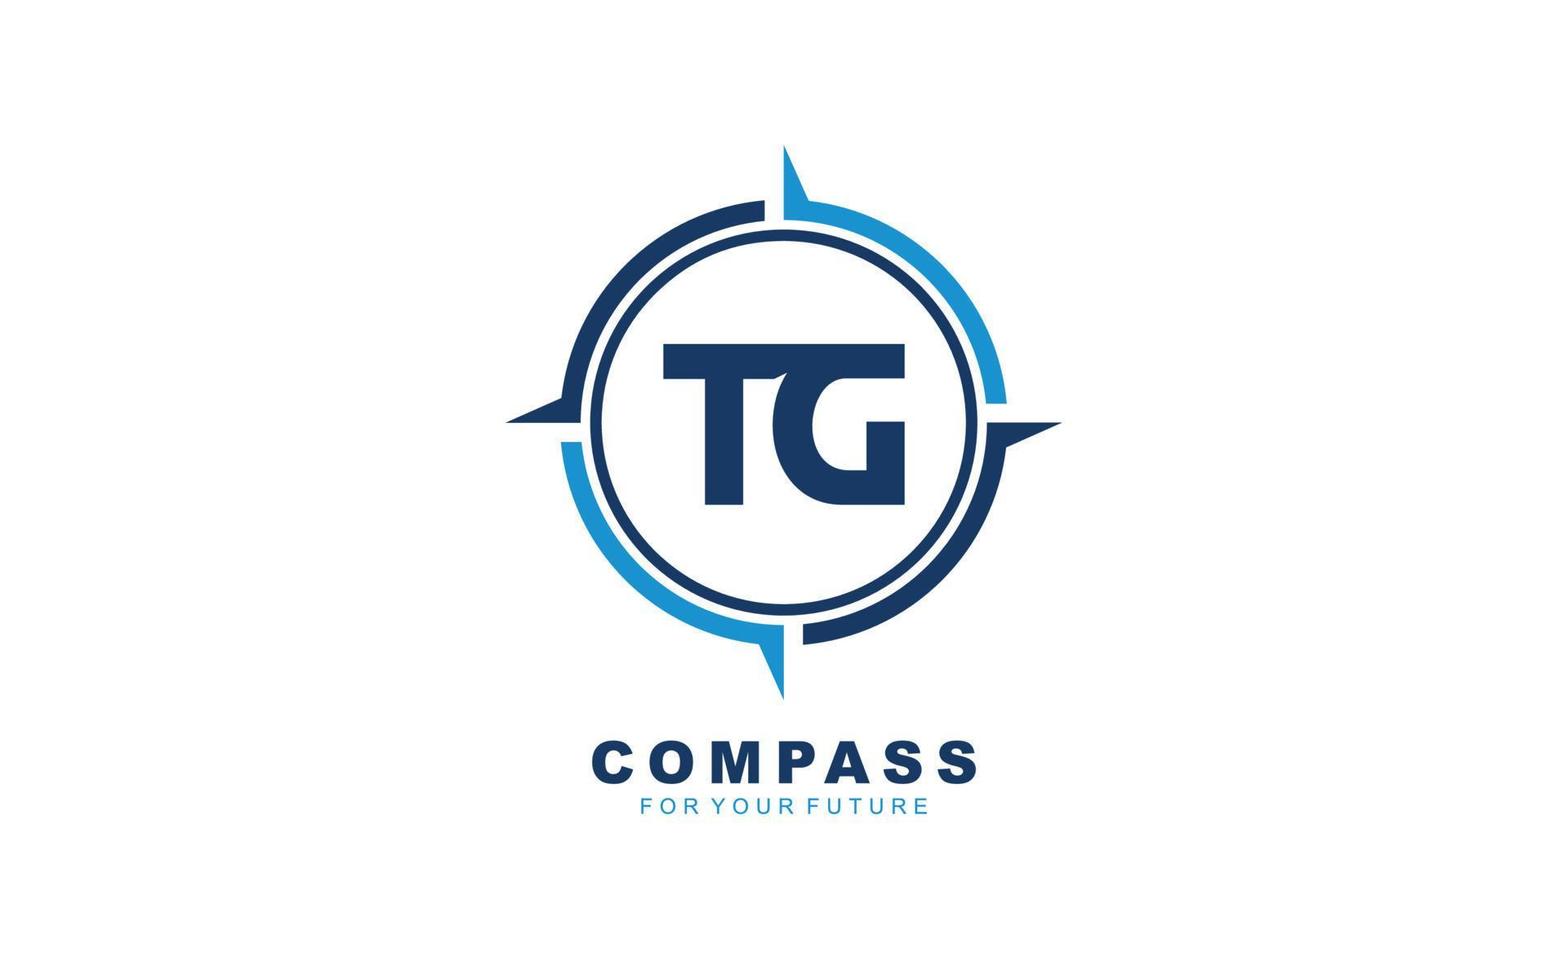 Navegación con el logotipo tg para la marca de la empresa. ilustración de vector de plantilla de brújula para su marca.